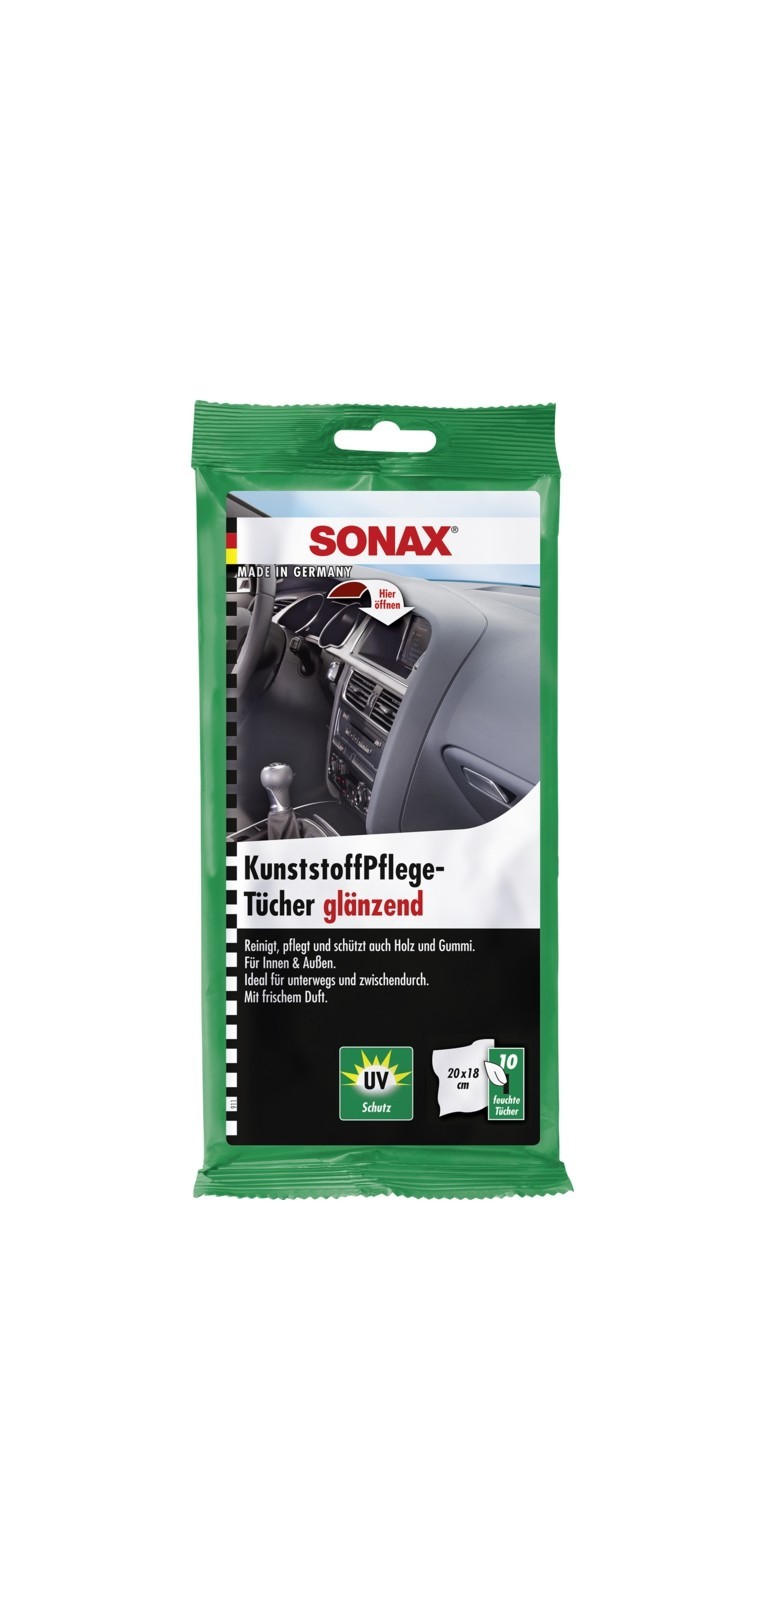 SONAX Kunststoff-Pflegetcher glnzend (10 Stk.), Art.-Nr. 04151000